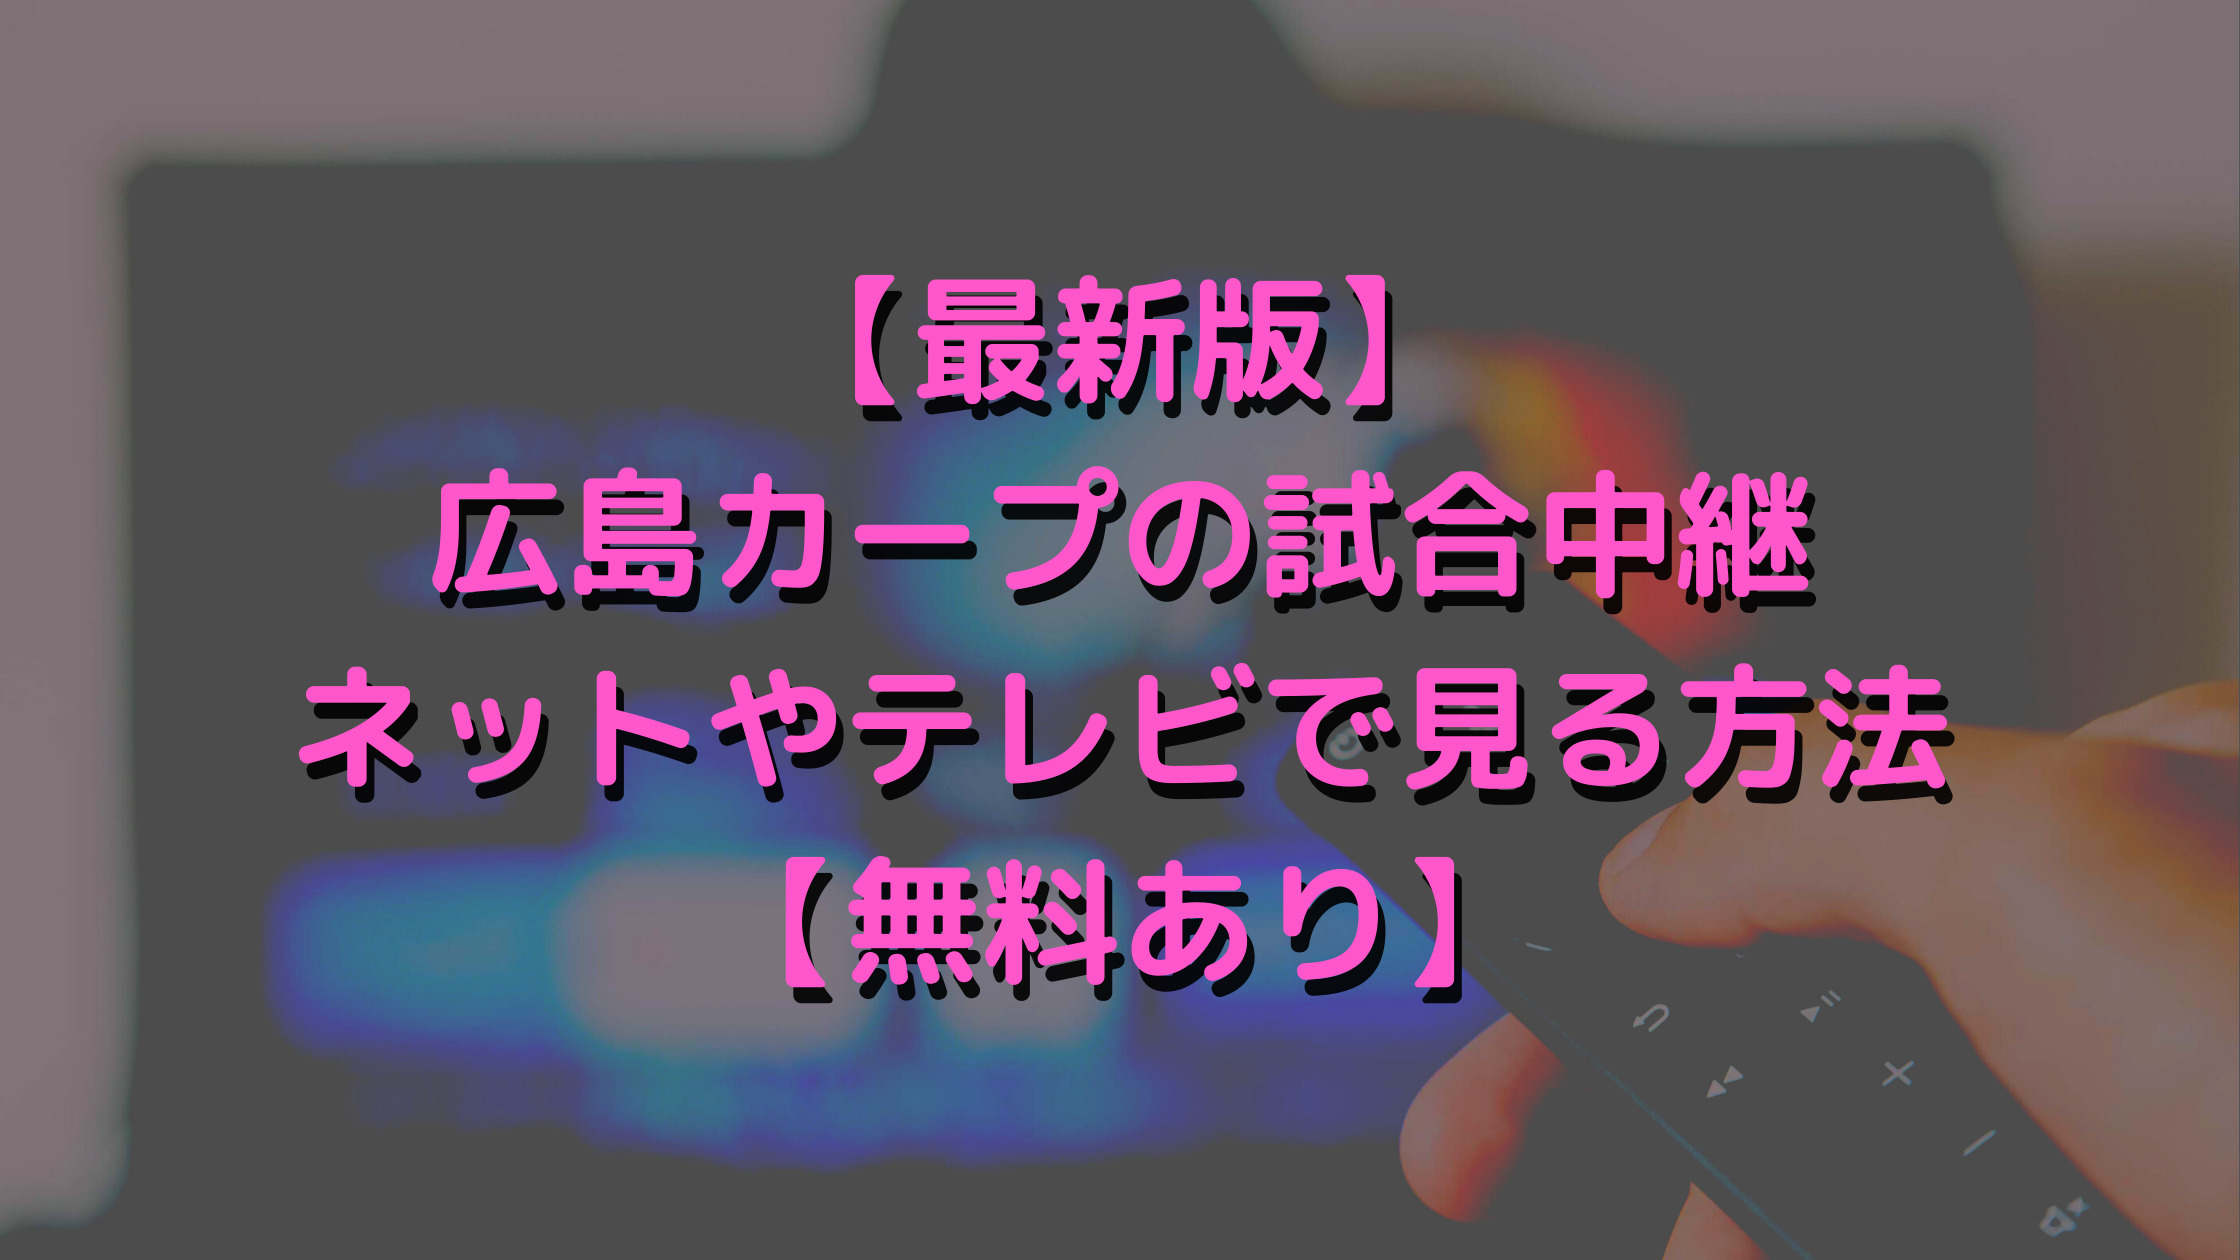 【最新版】広島カープの試合中継をネットやテレビで見る方法【無料あり】